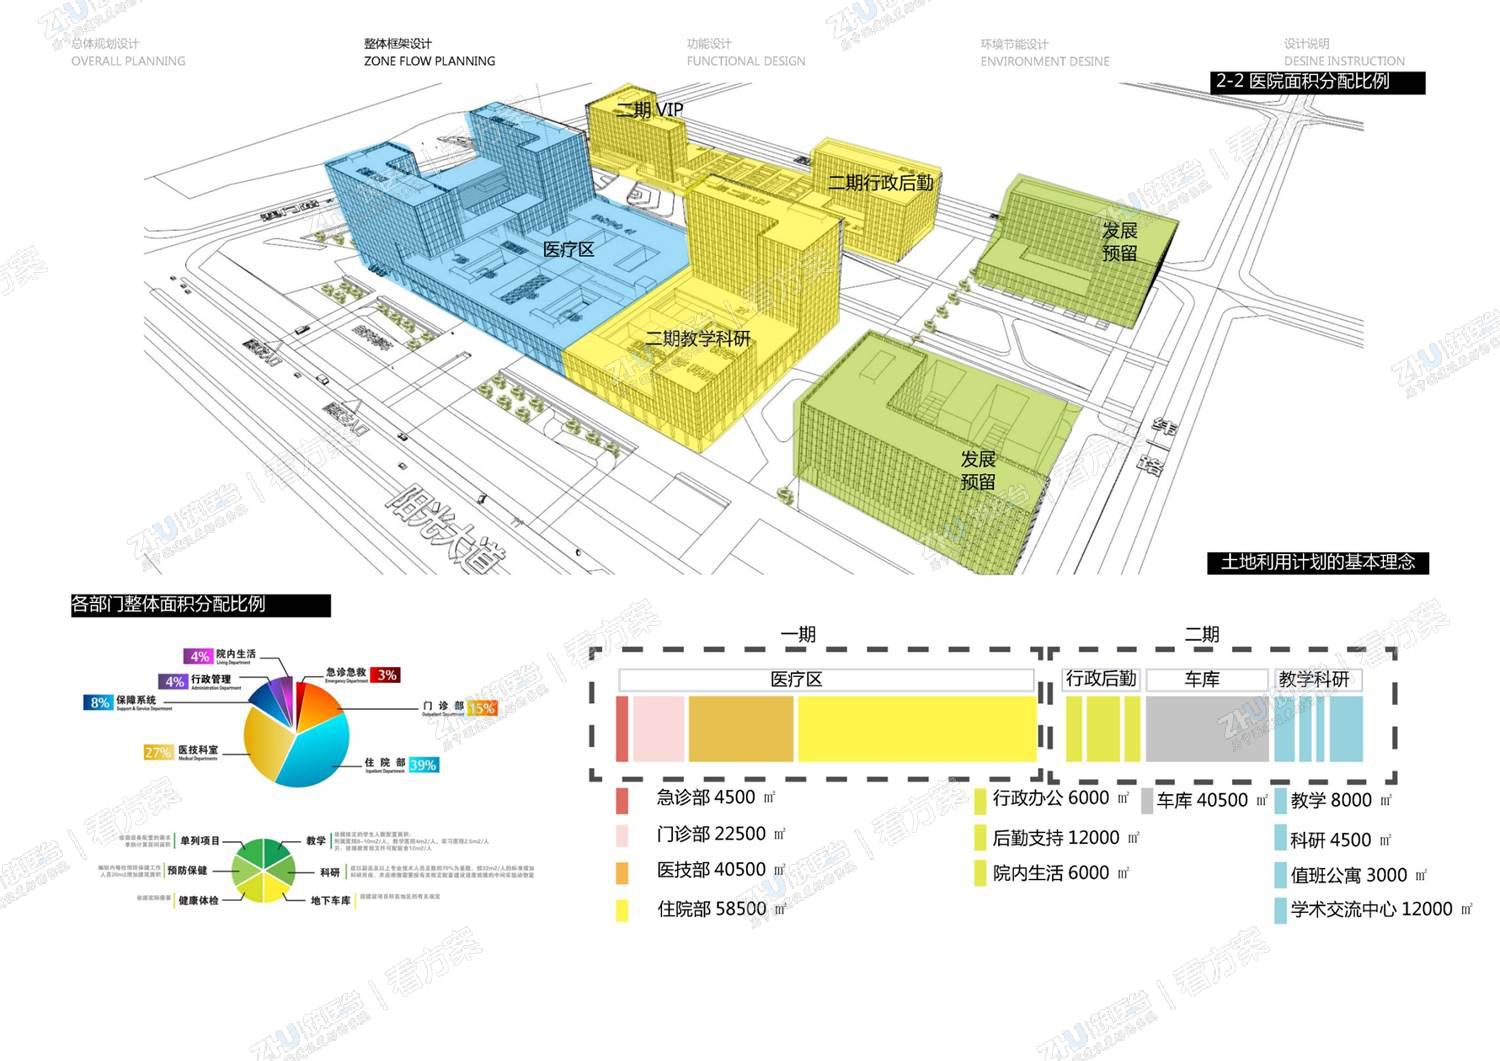 医院功能空间分析图、各功能分区面积分配比例。